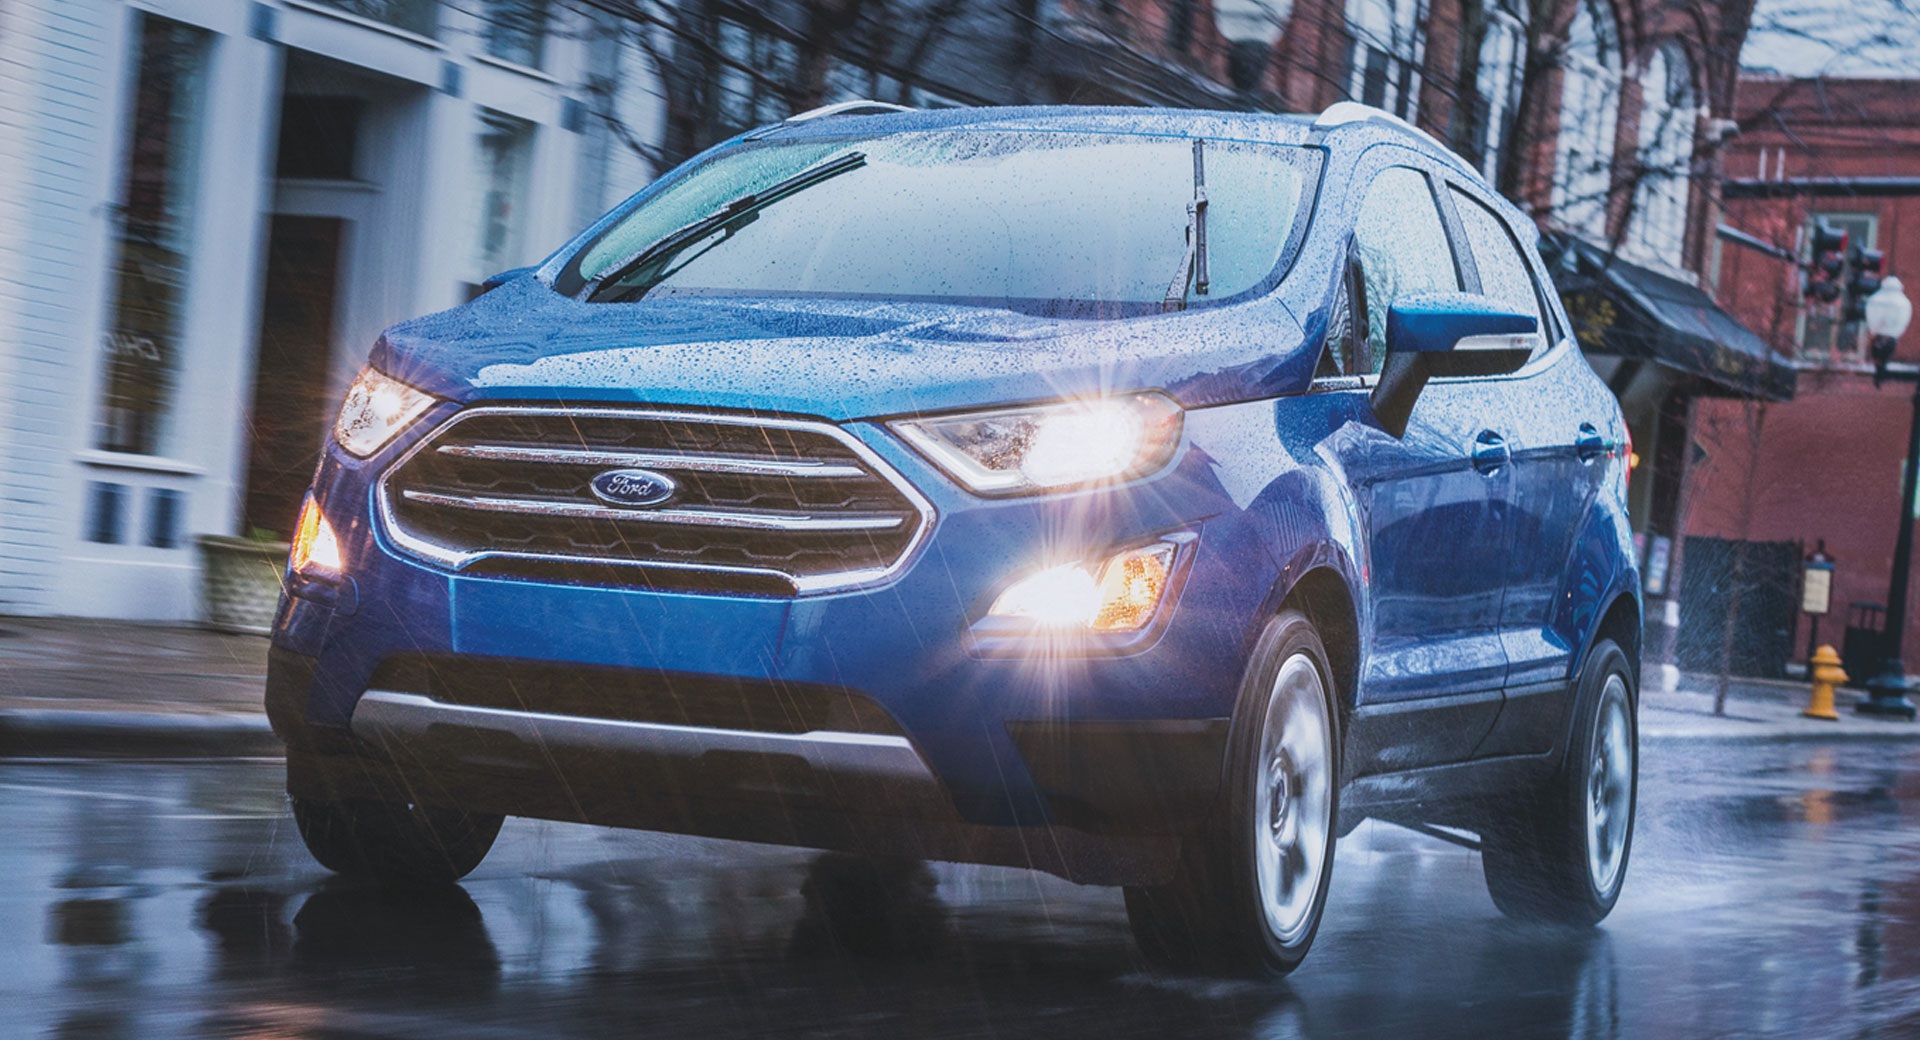 Đánh giá chi tiết Ford Ecosport: Mẫu xe đô thị tiện dụng